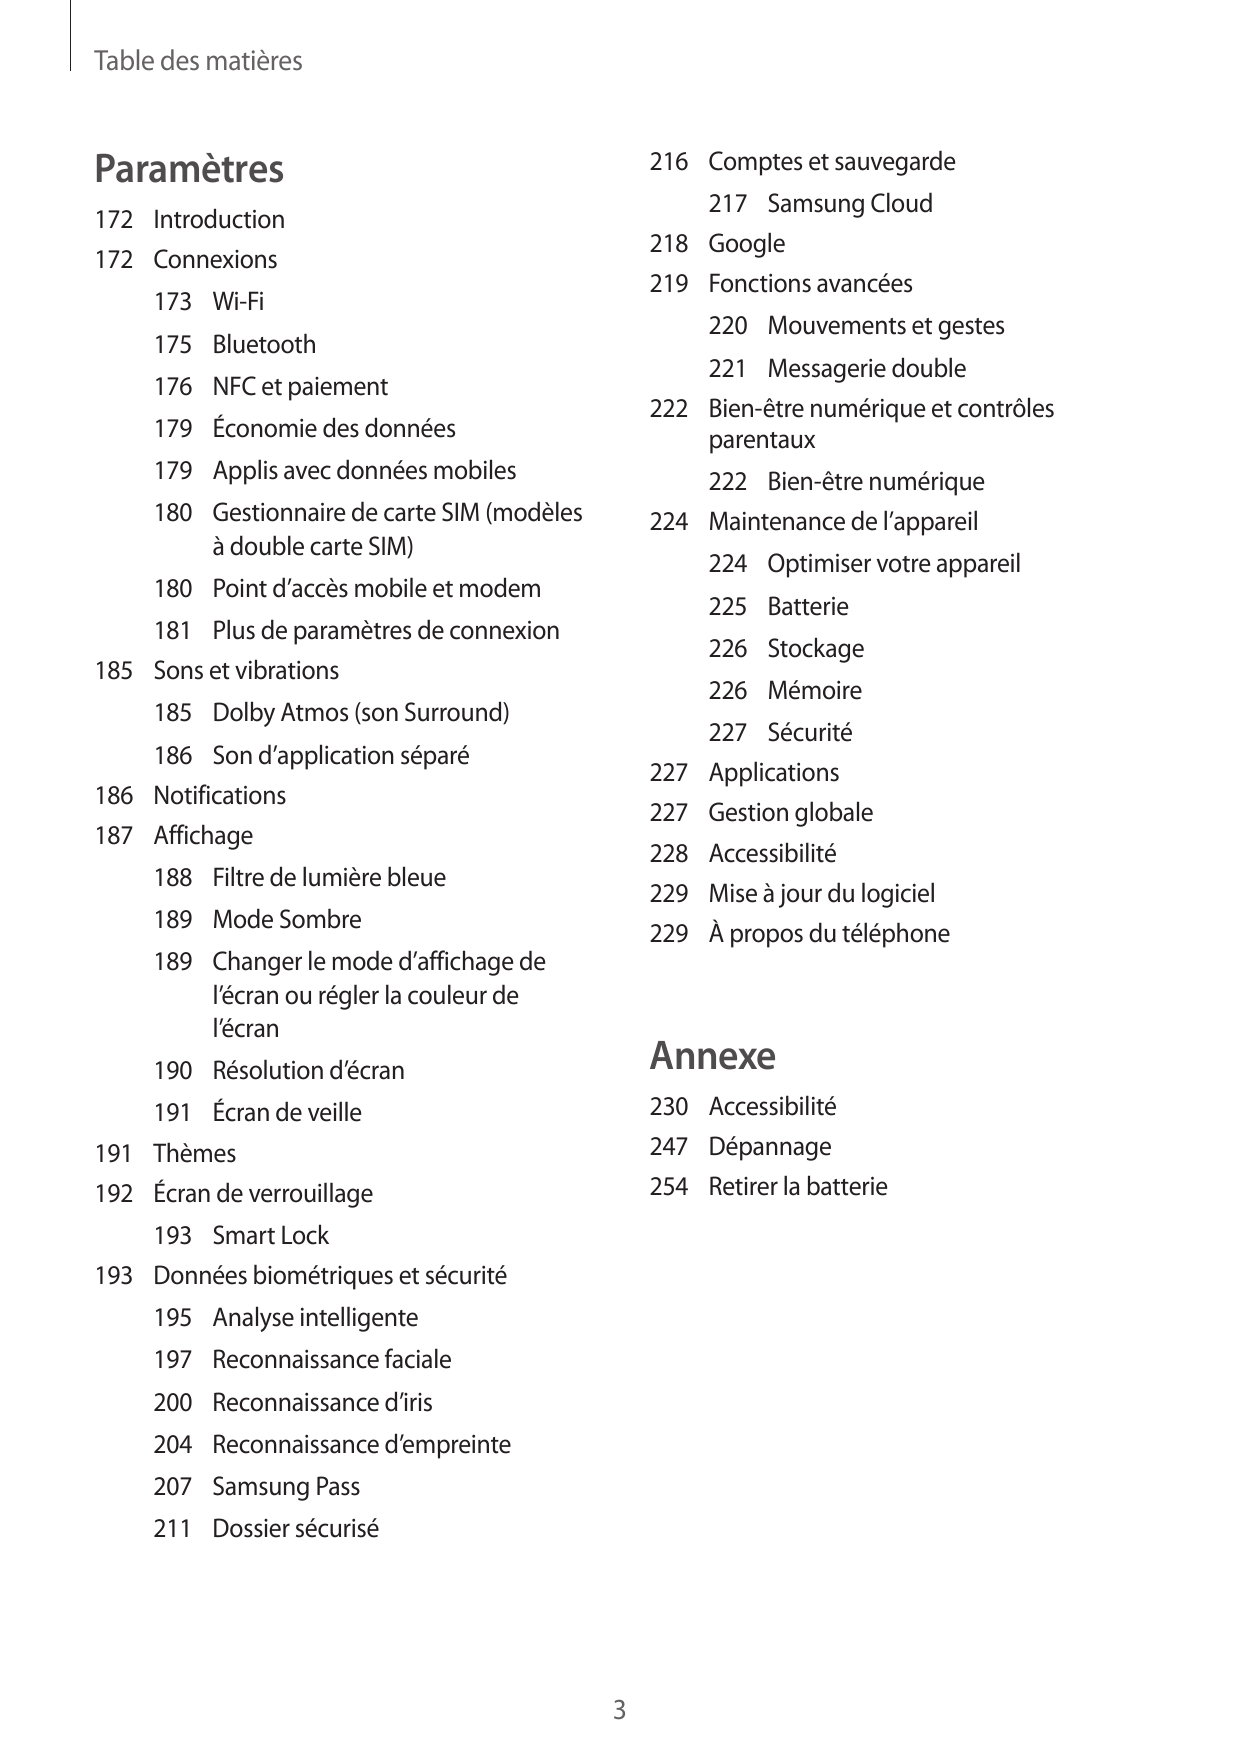 Table des matièresParamètres216 Comptes et sauvegarde217 Samsung Cloud218Google219 Fonctions avancées172Introduction172Connexion